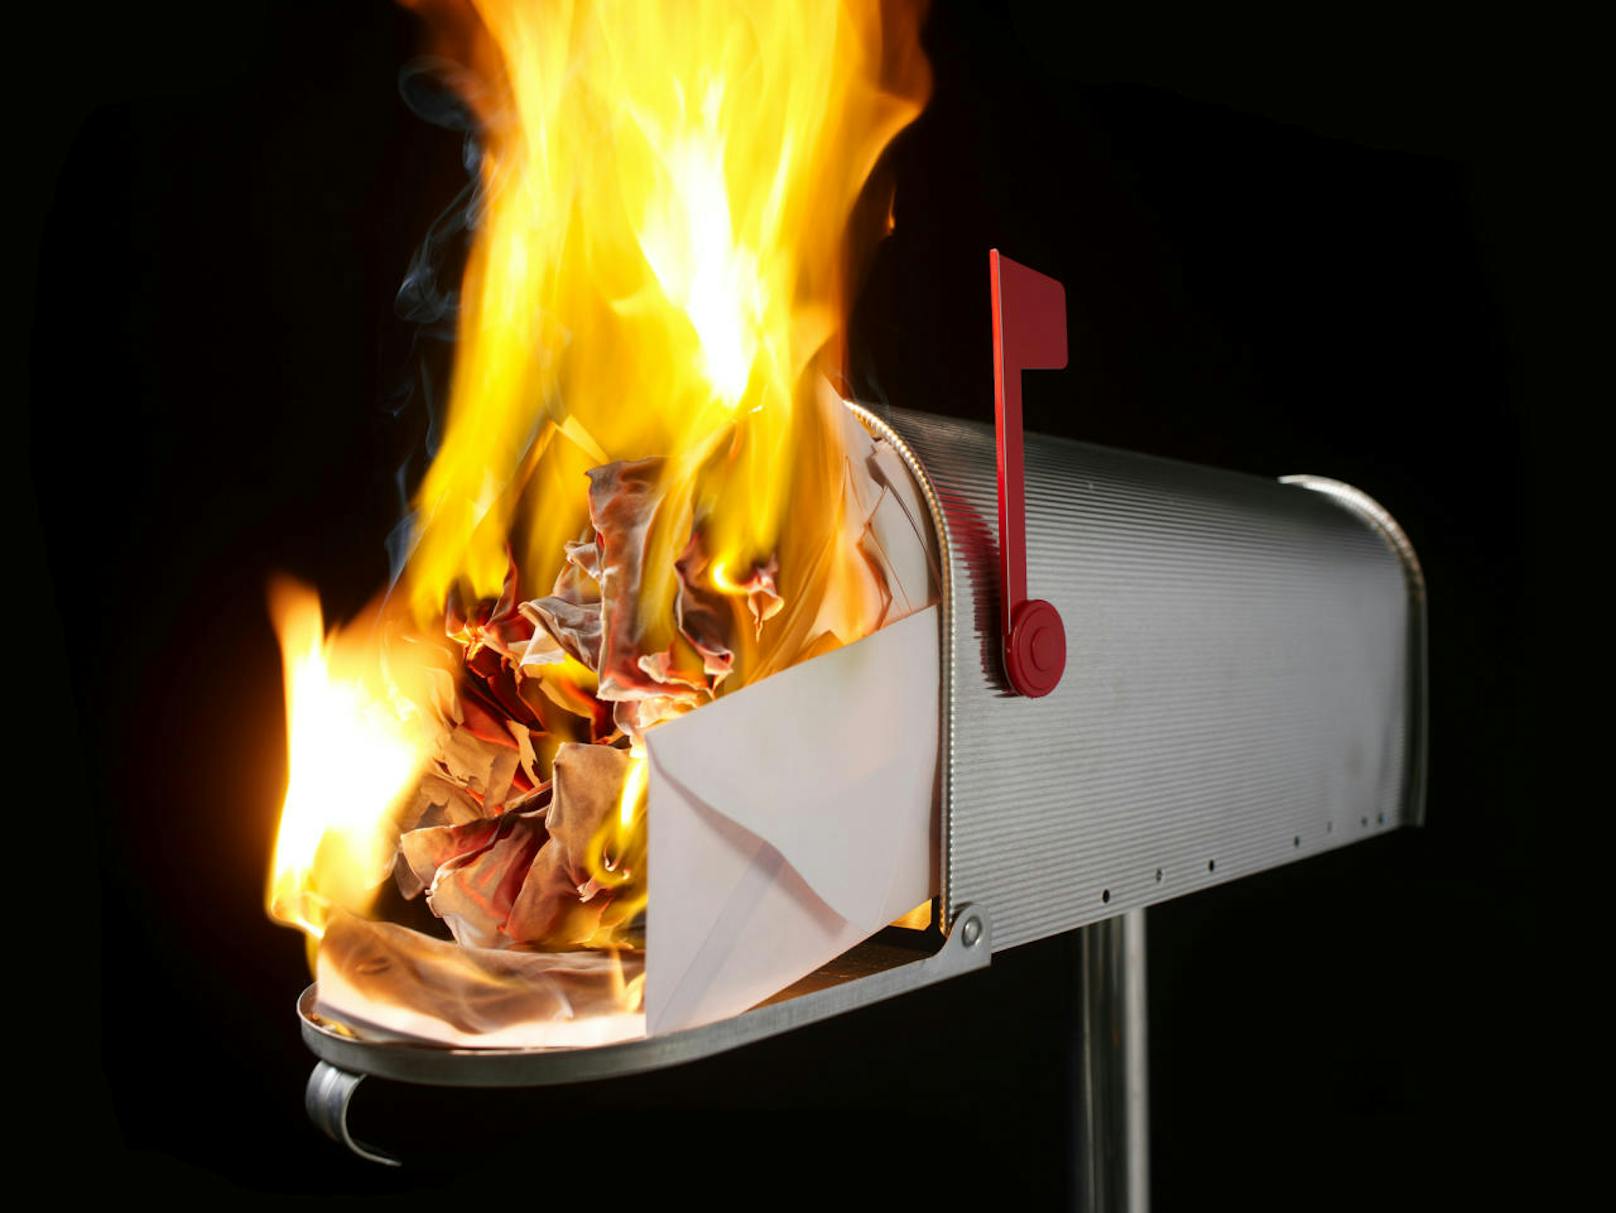 Das Einwerfen von brennenden Gegenständen in Briefkästen.